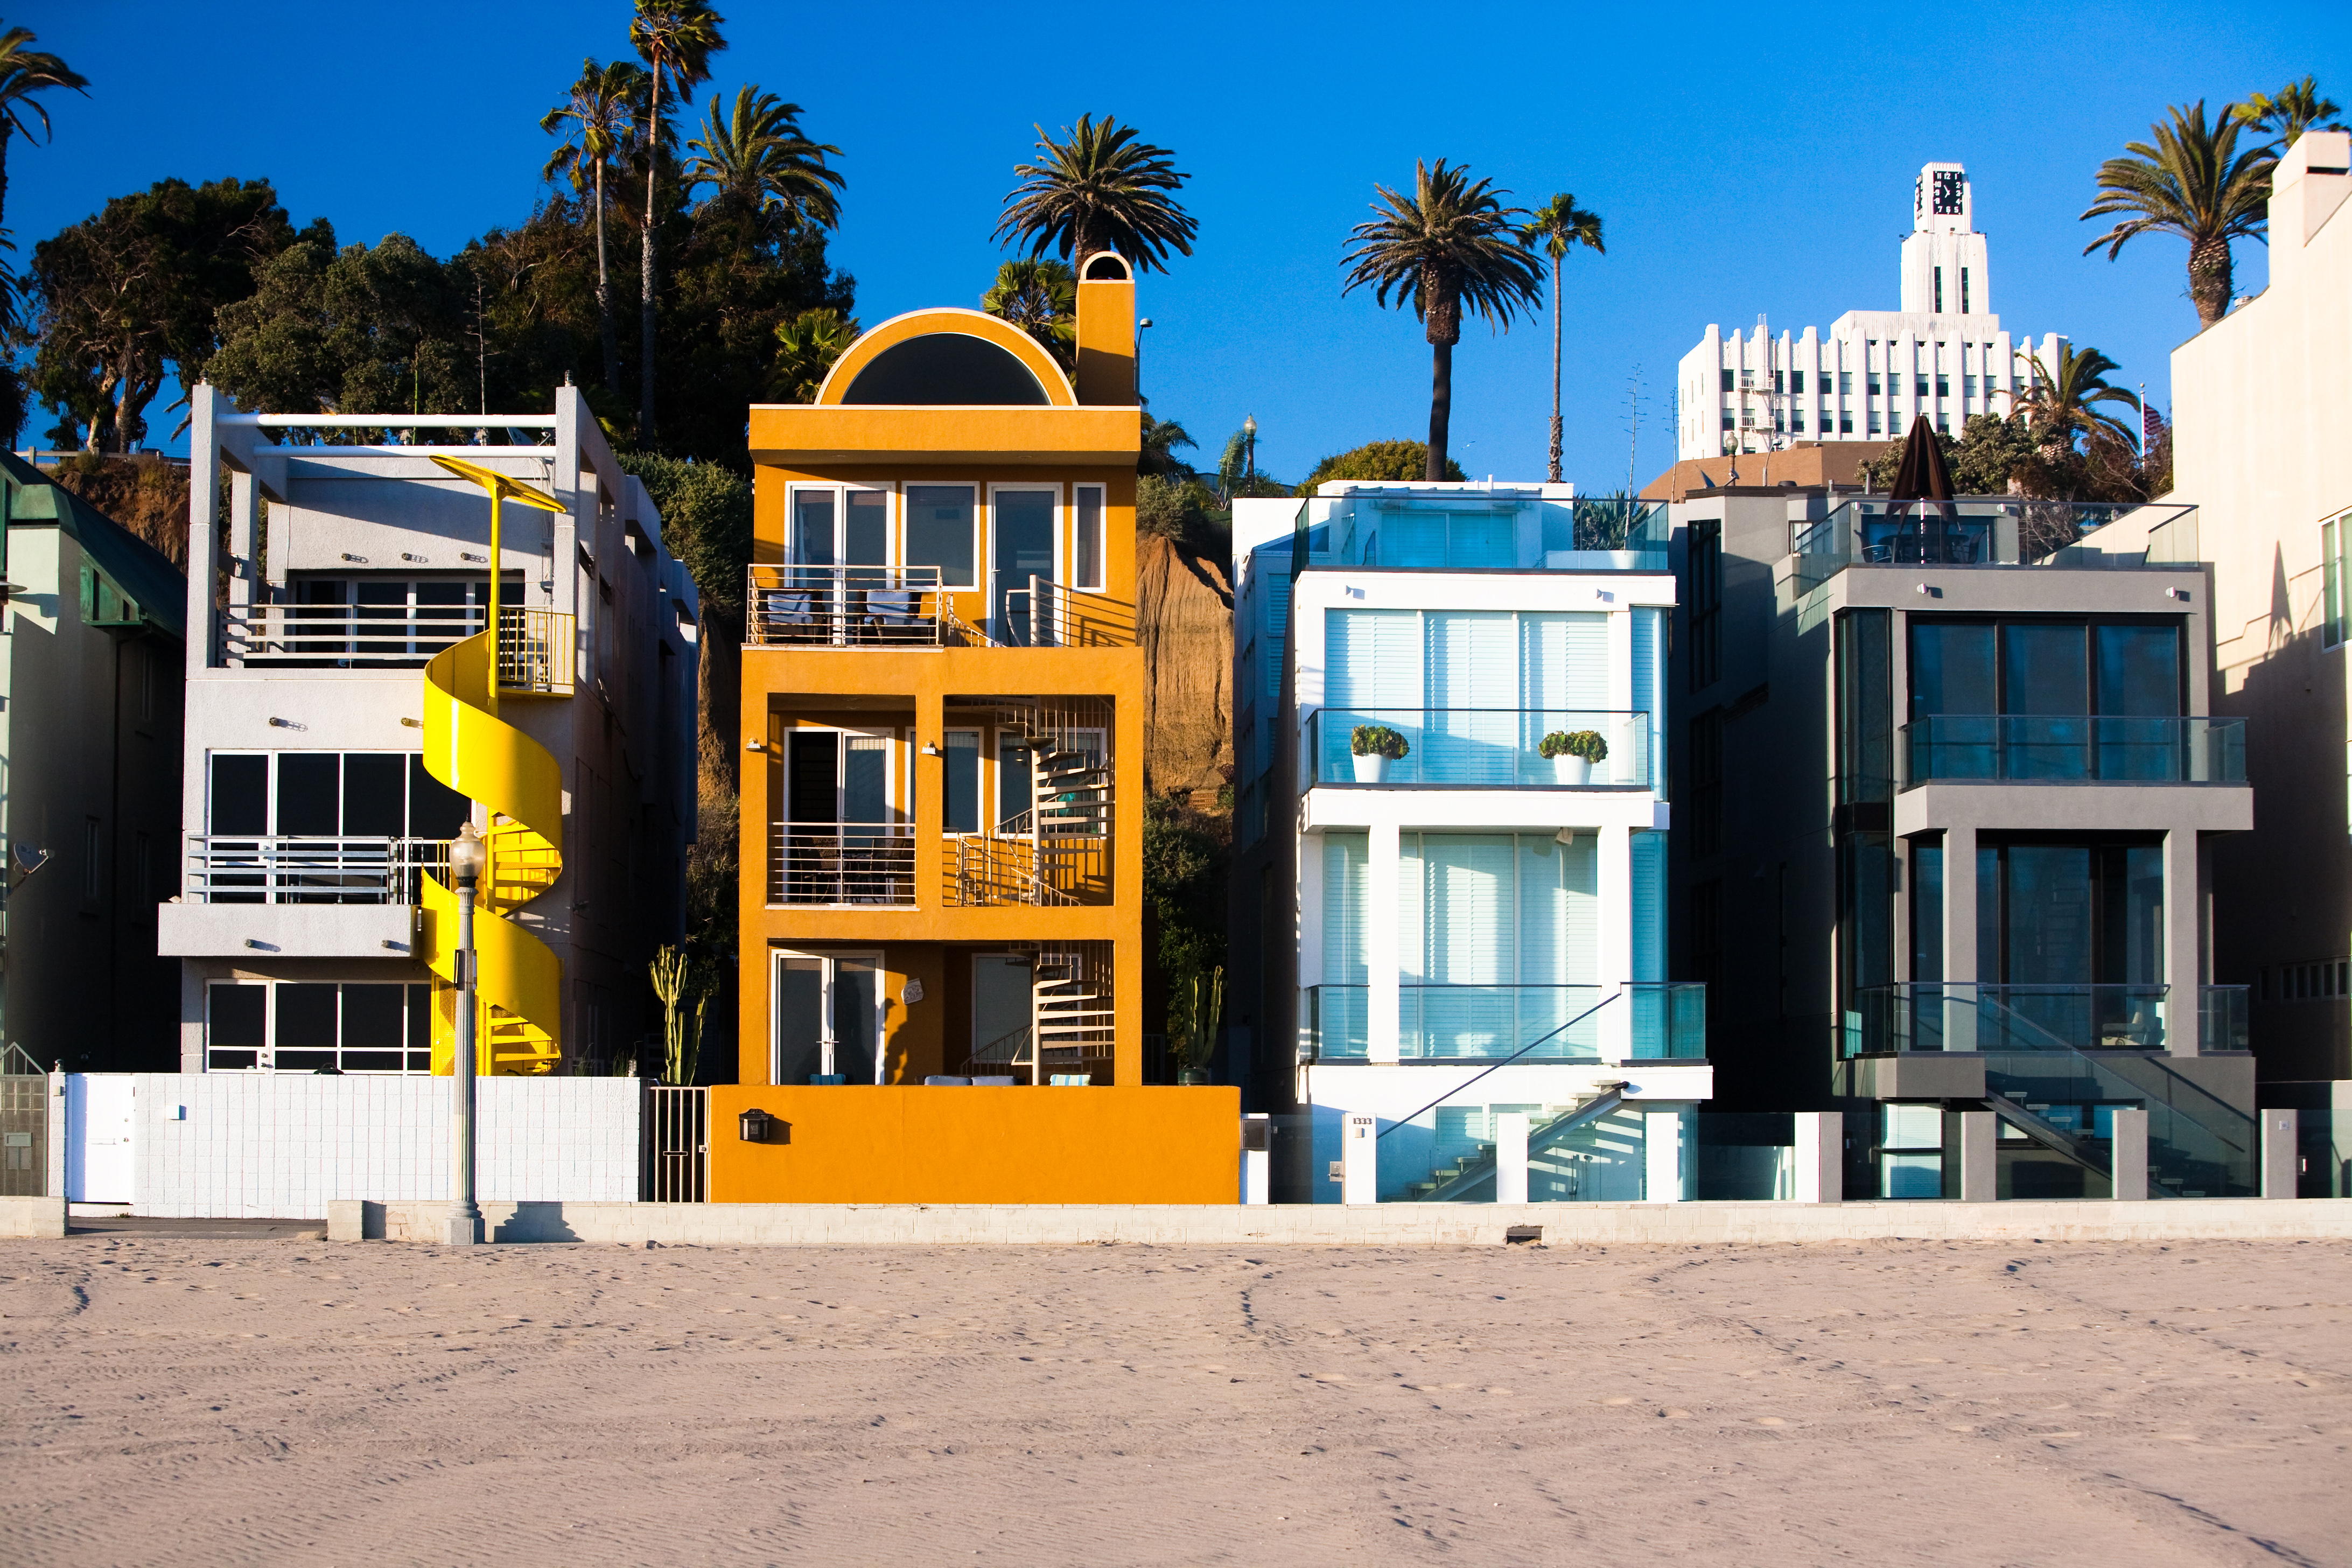 Homes in Santa Monica